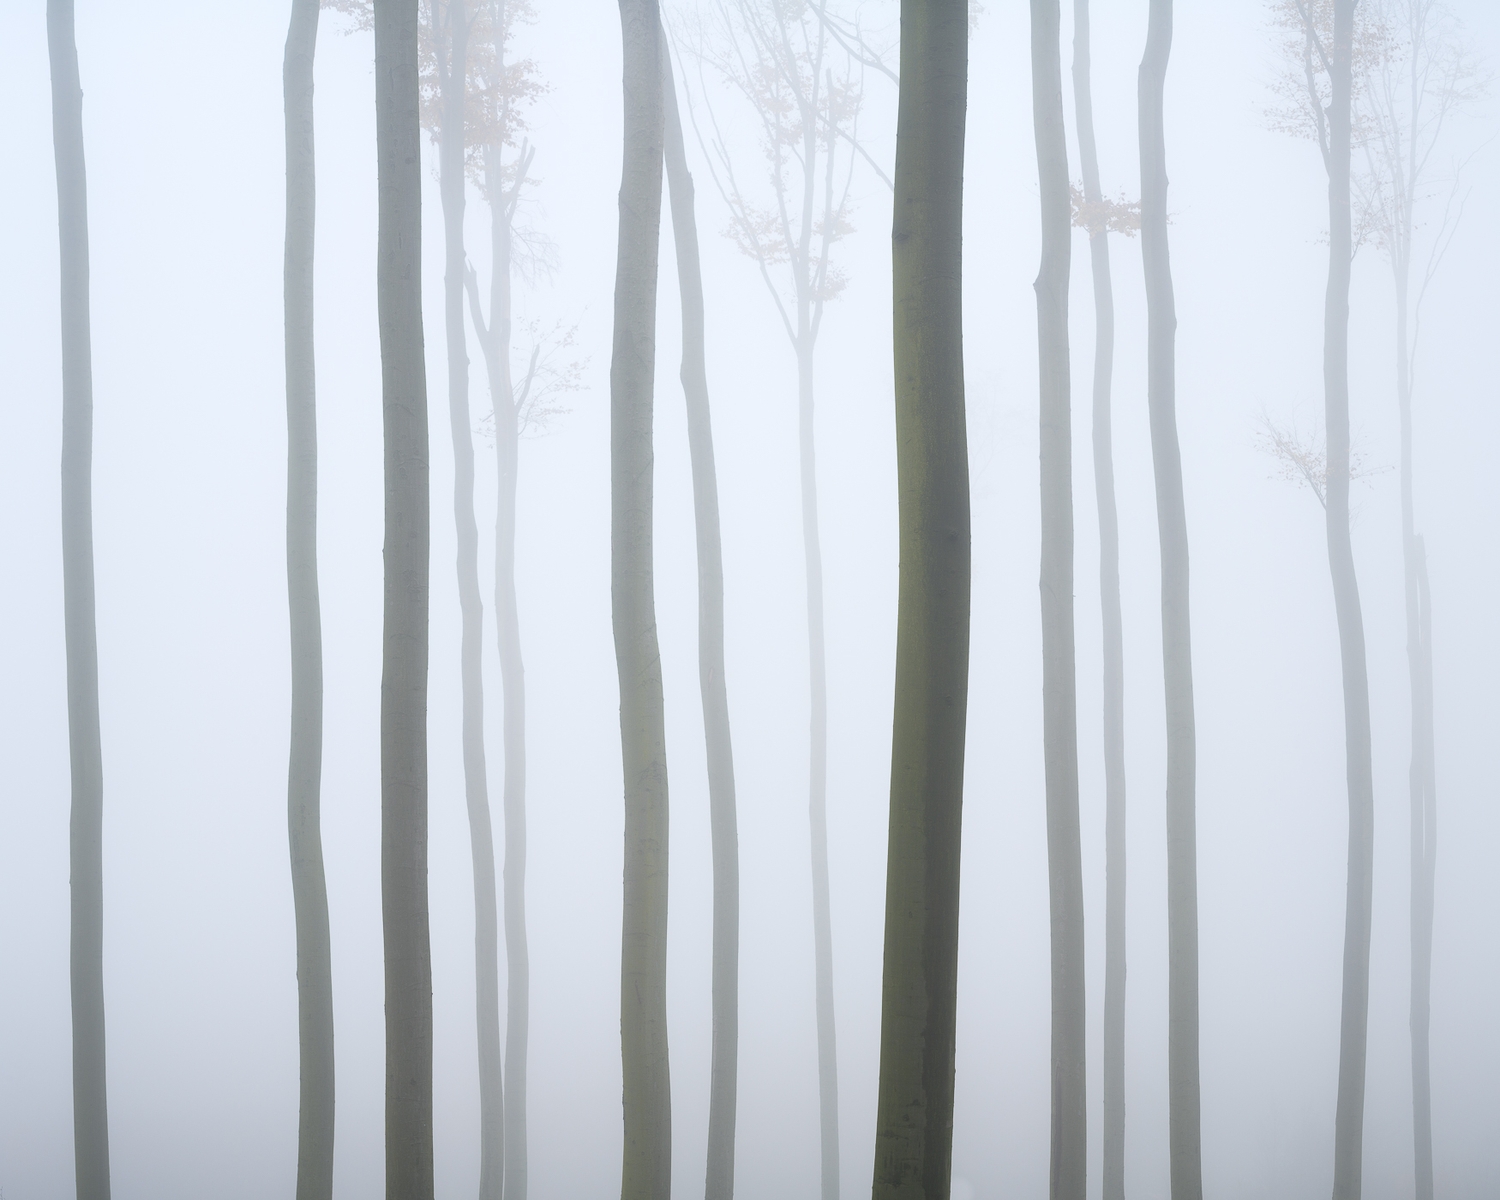 Bukový les v mlze, říjen 2022